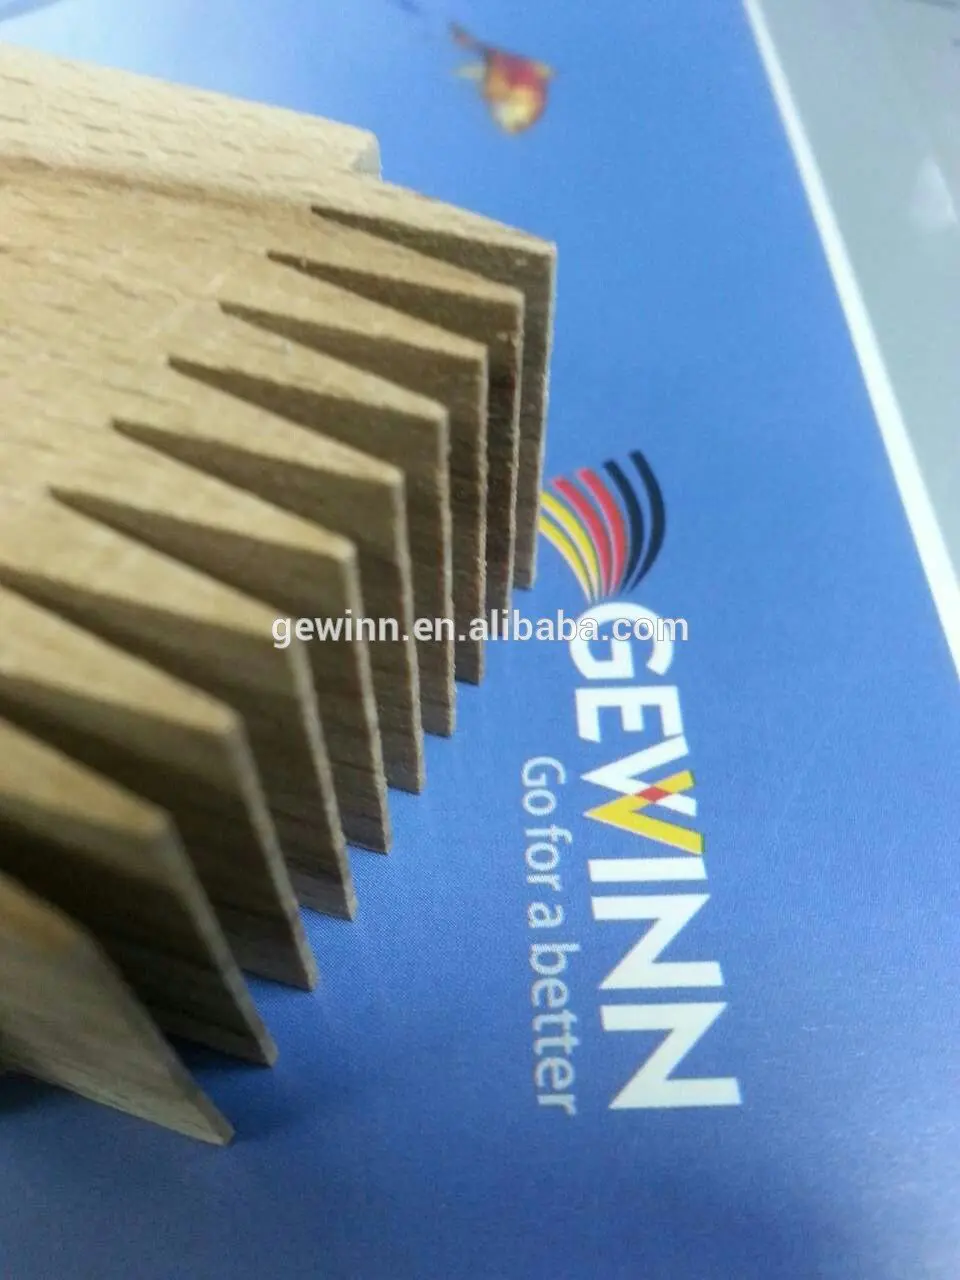 Gewinn Brand heads chinese woodworking equipment cnc factory